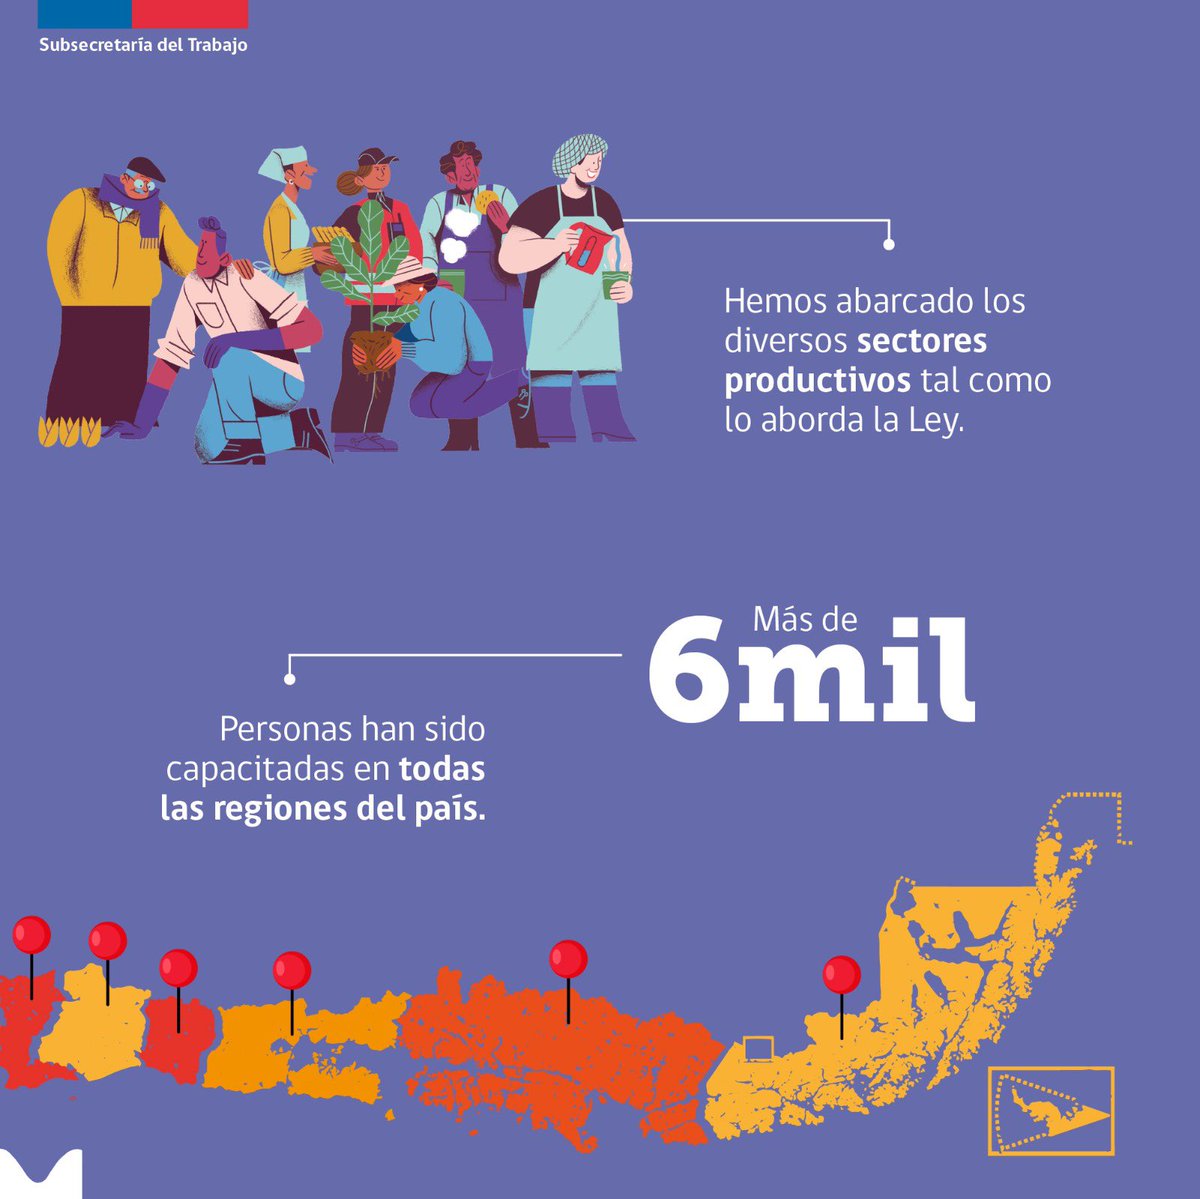 📢Queremos que la Ley #40Horas se implemente de forma correcta y por ello 👉 hemos capacitado a más de 6 mil representantes de las y los trabajadores y empleadores en todo Chile, en colaboración con organismos sociales, públicos, privados y académicos. ¡Seguimos!